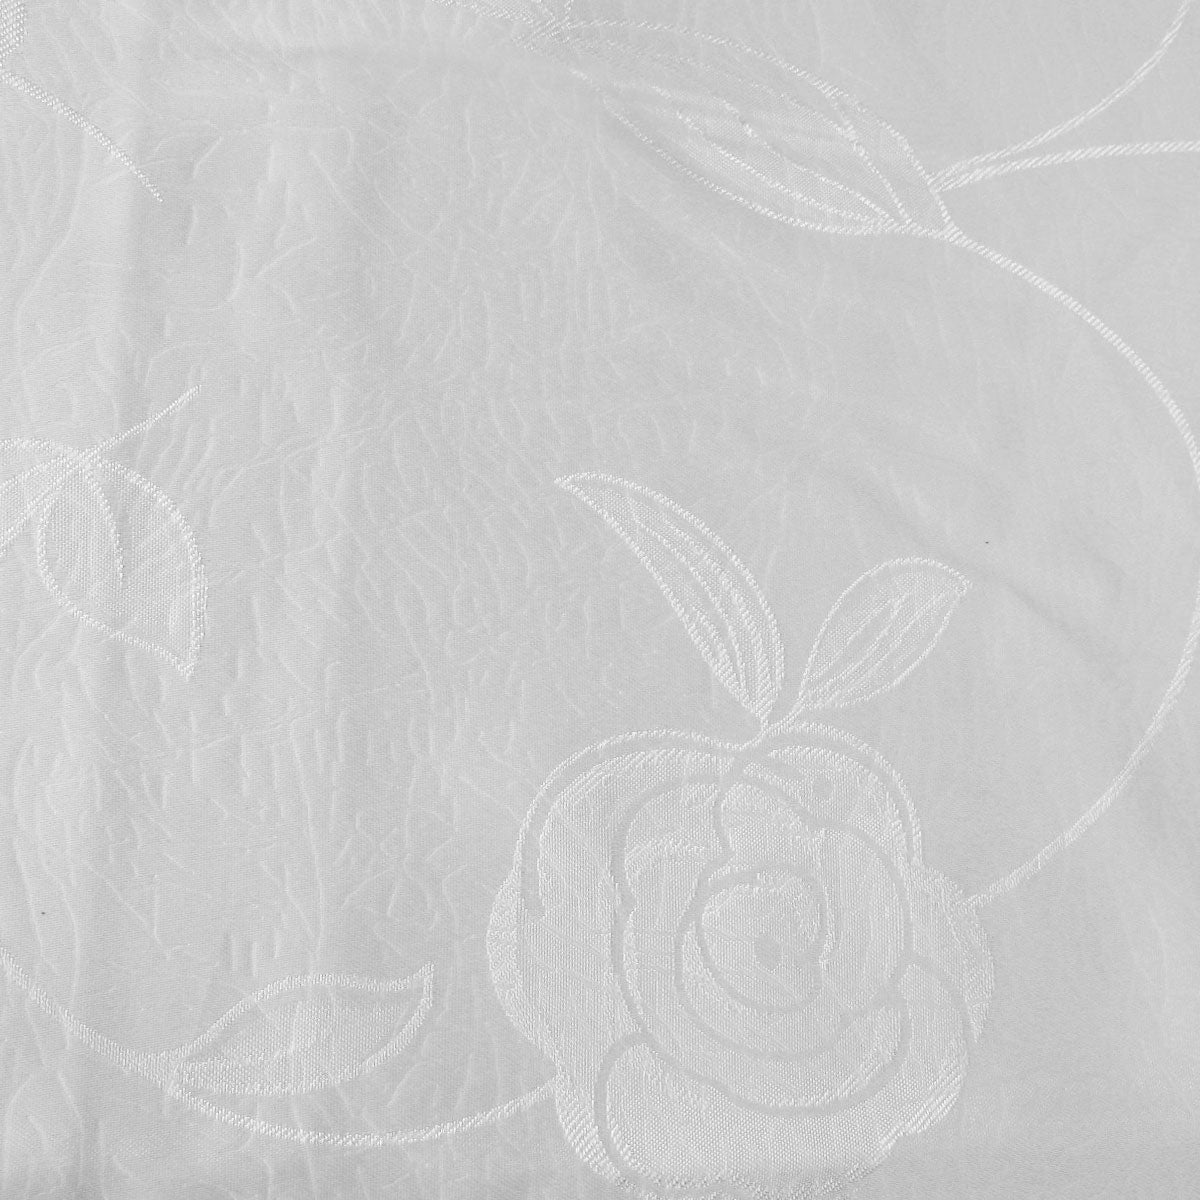 Jacquard Tablecloth Rosa White 135 x 180 cm